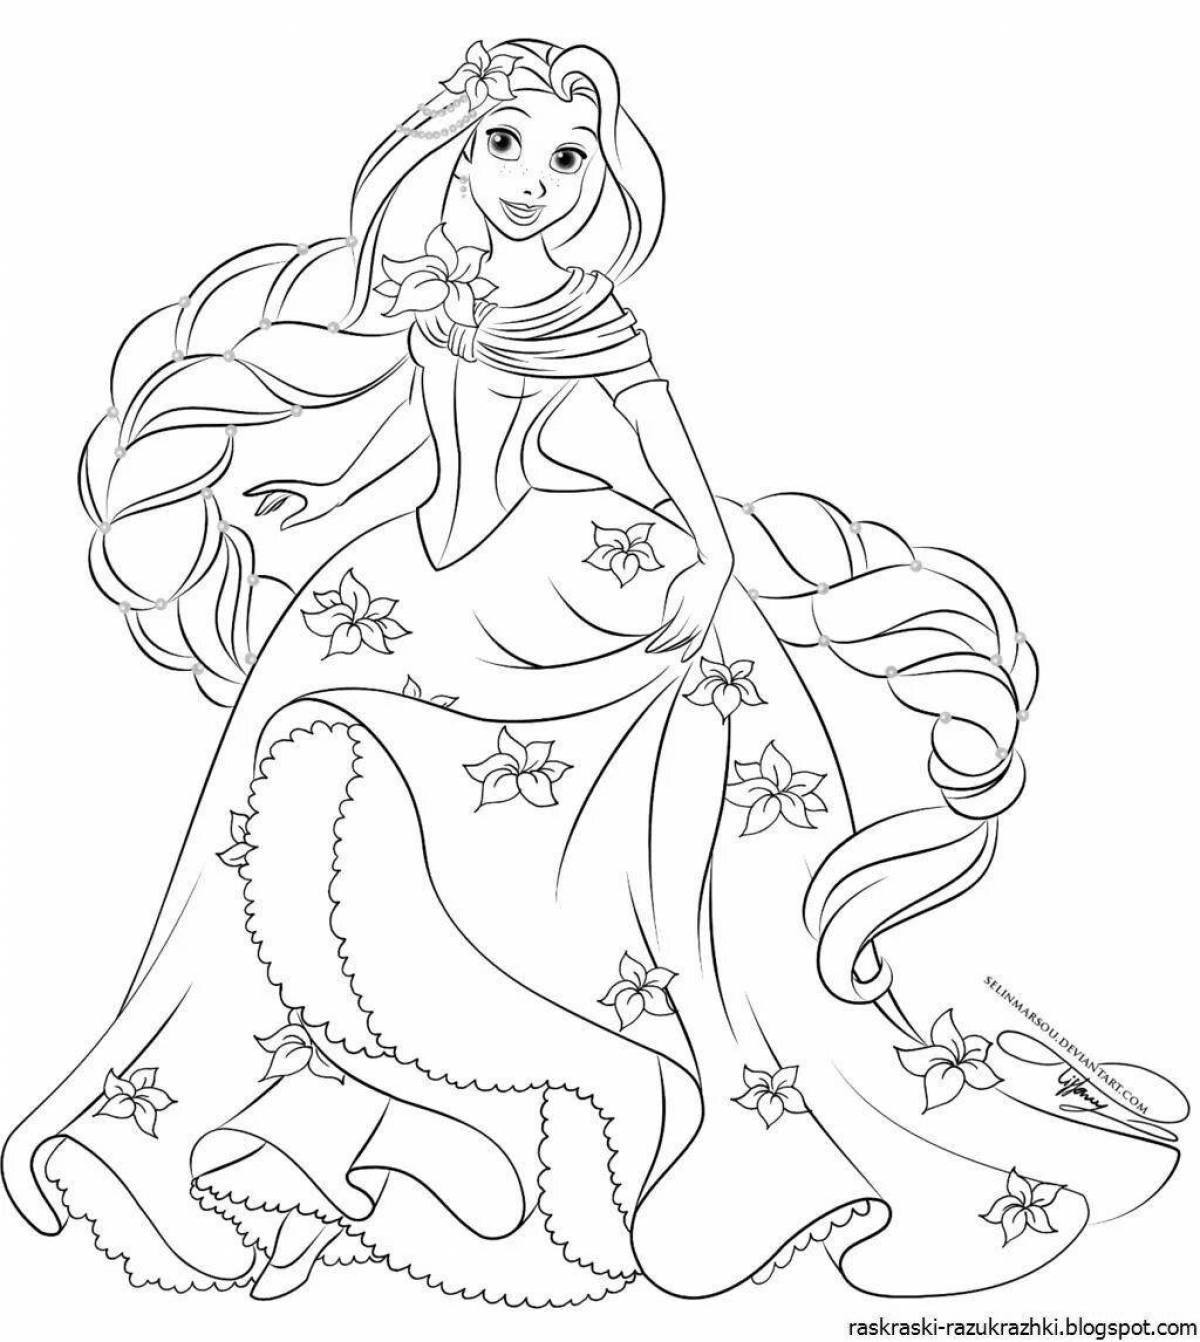 Живая раскраска принцесса рапунцель для детей